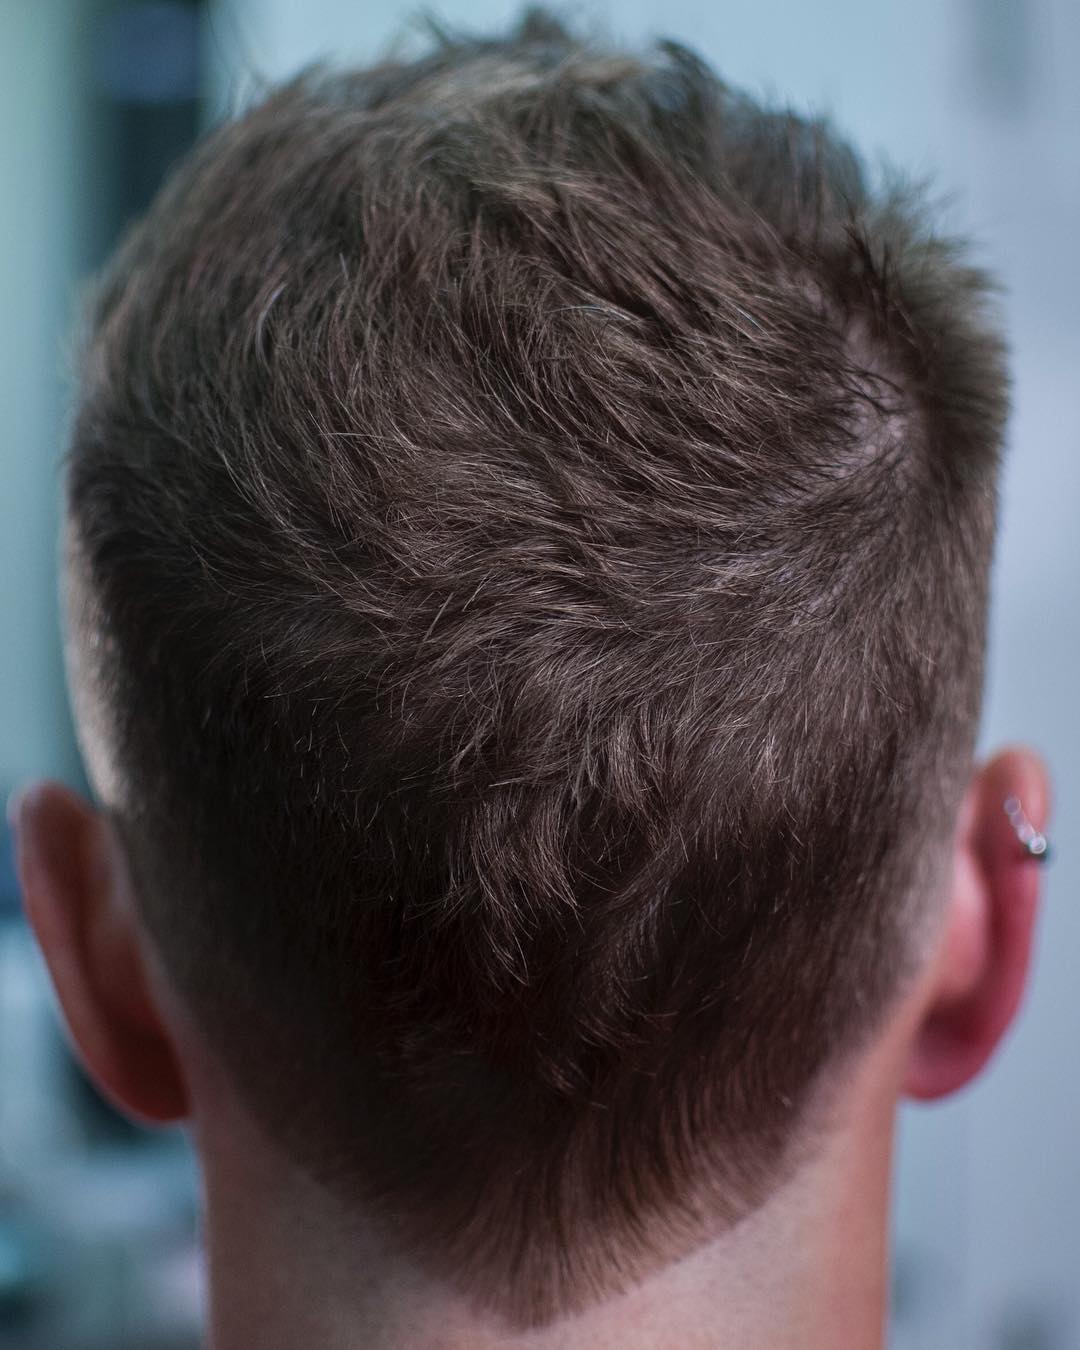 لأصحاب الشعر القصير.. أفضل قصات الشعر لعام 2018 Johnny_snips-short-haircuts-for-men-texture-v-cut-neck